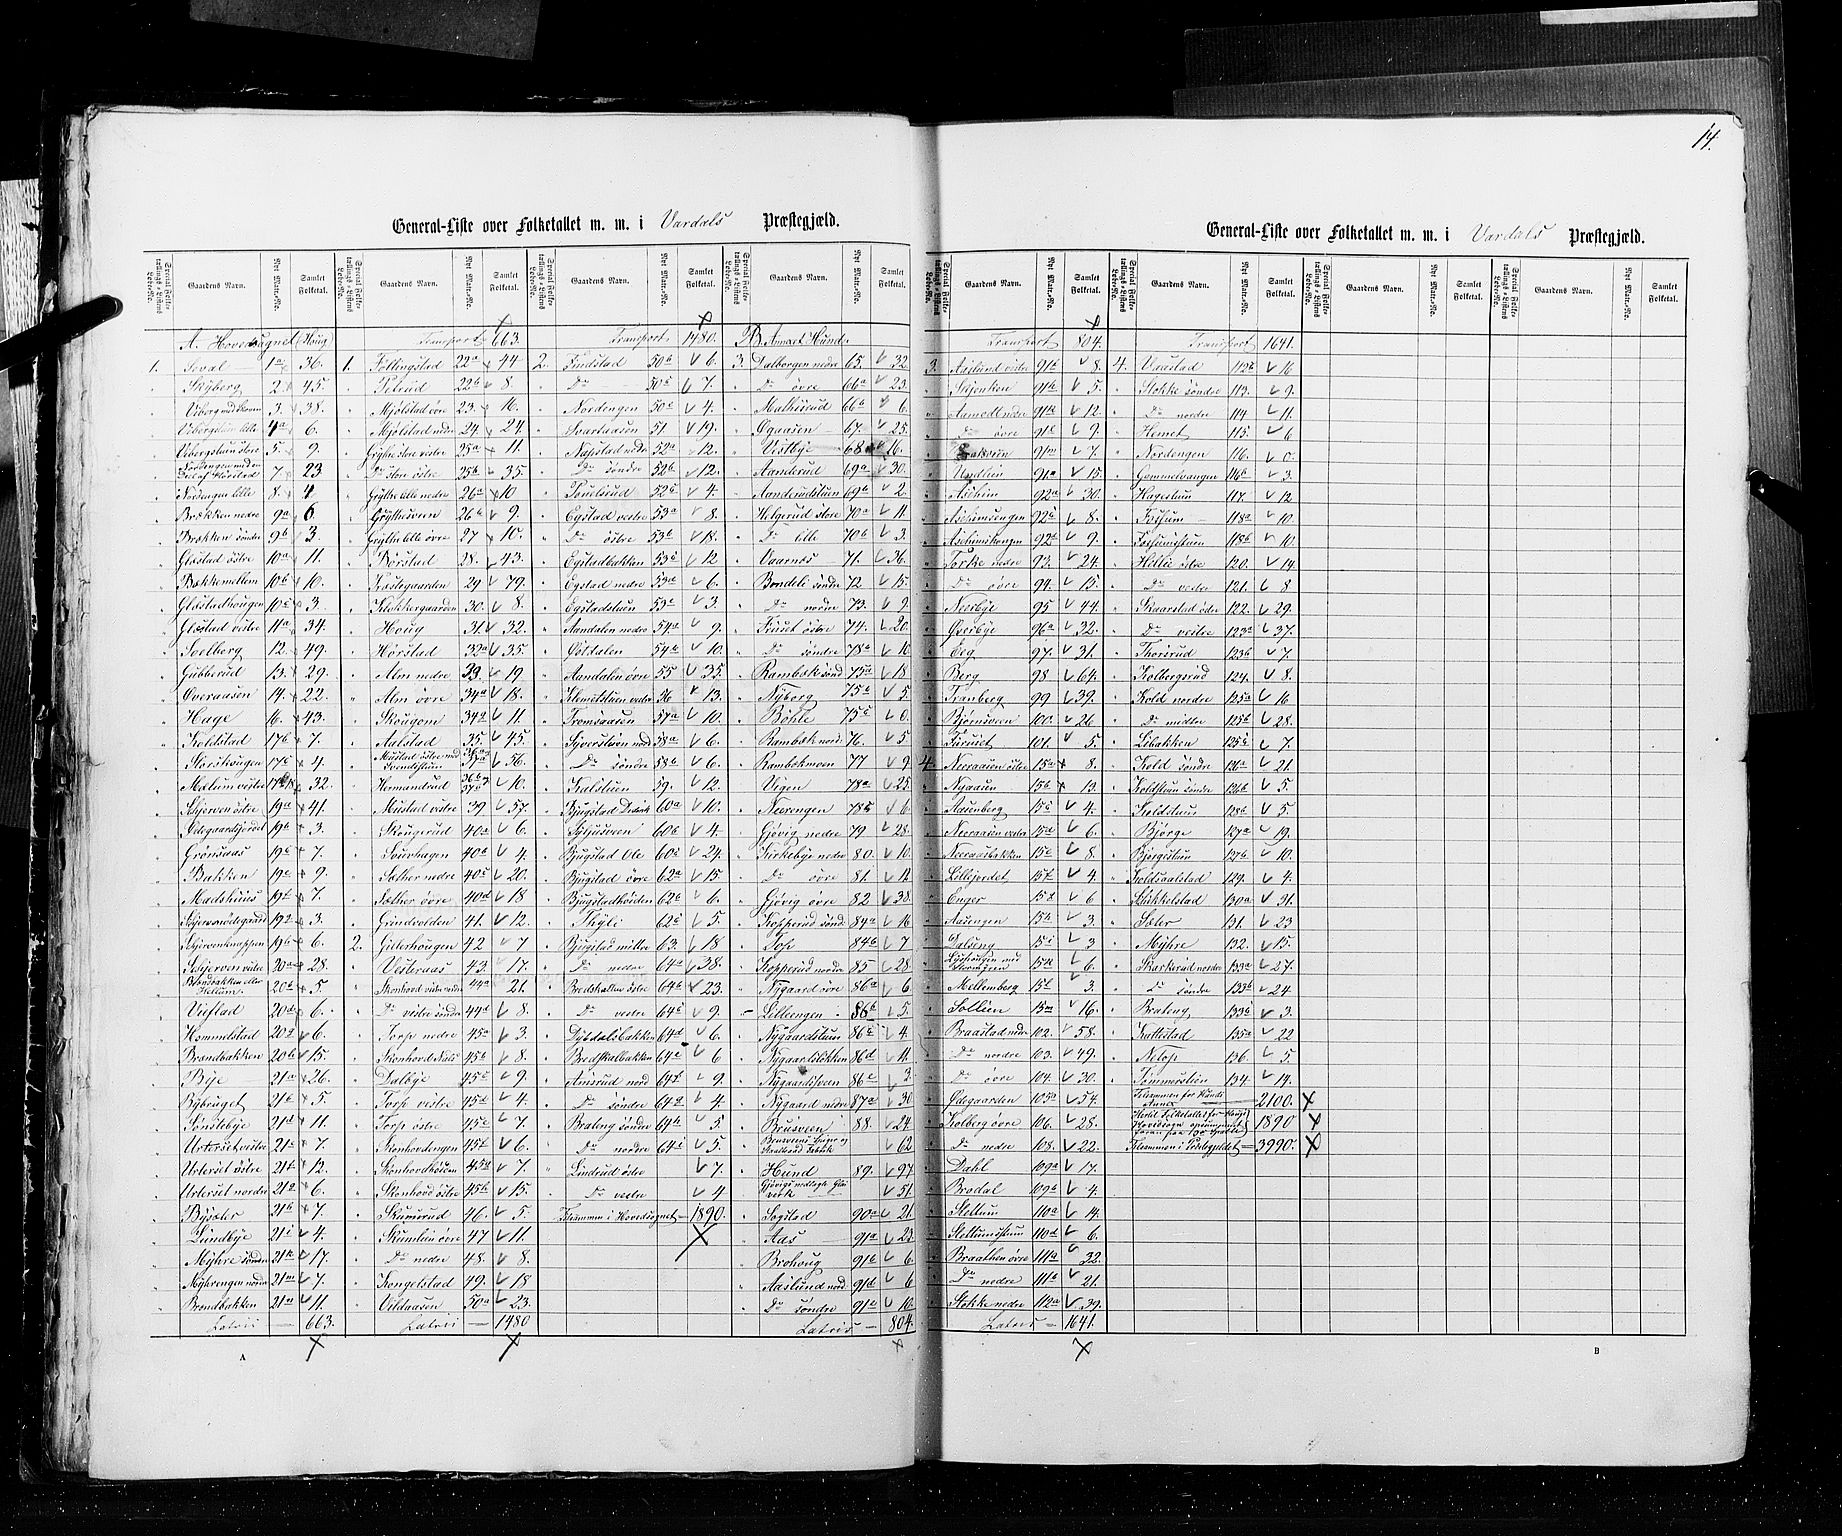 RA, Census 1855, vol. 2: Kristians amt, Buskerud amt og Jarlsberg og Larvik amt, 1855, p. 14